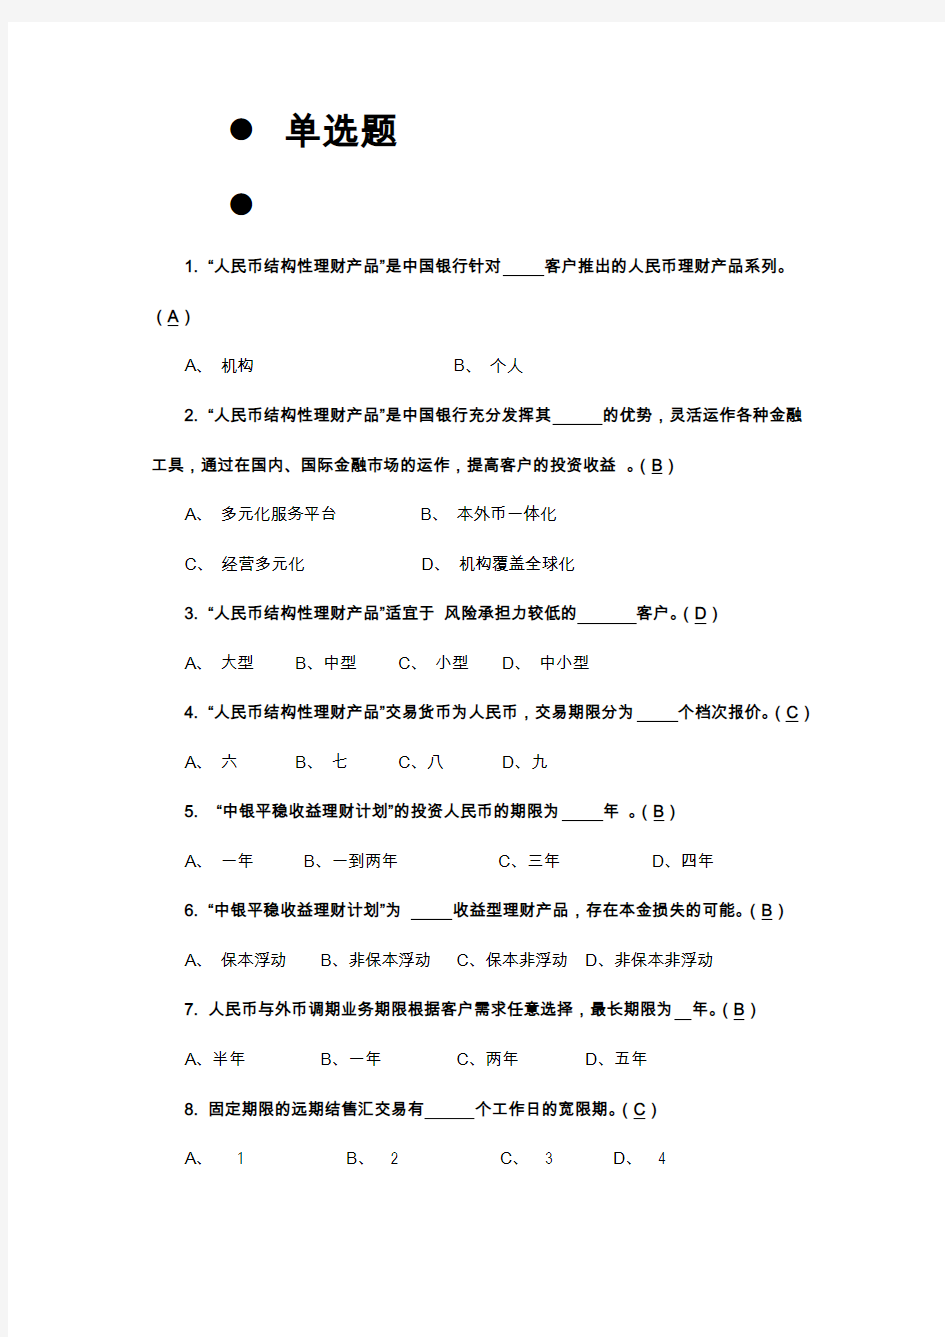 中国银行公司客户经理考试总题库